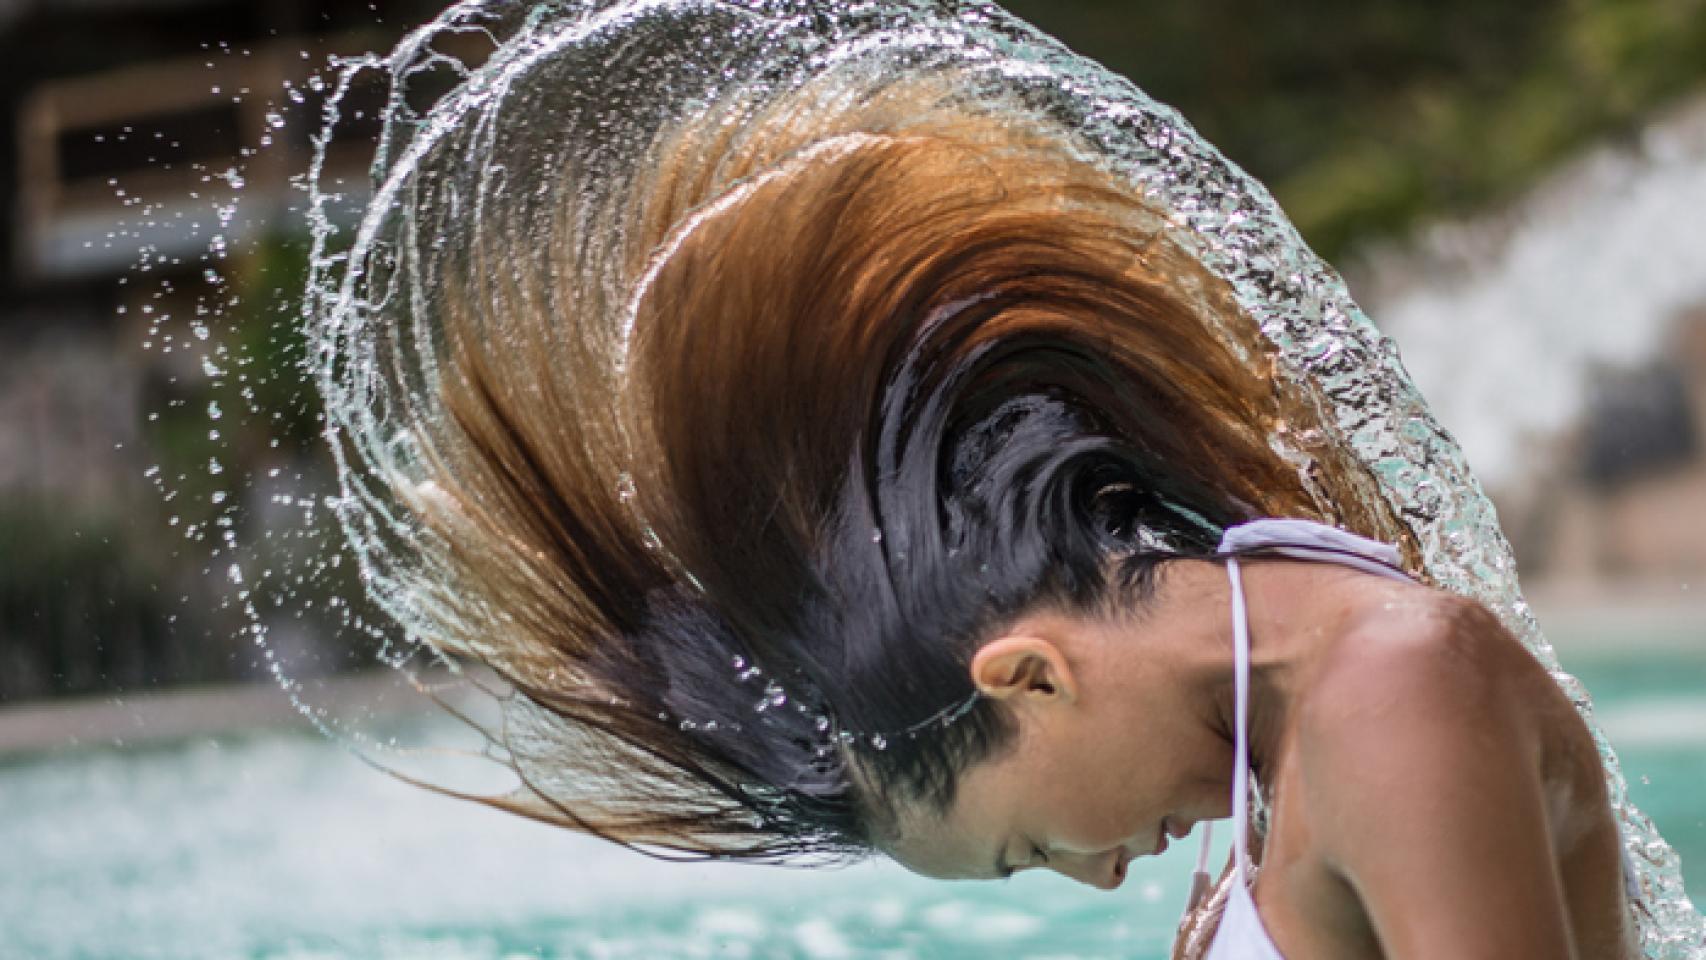 Gorros de natación para mujer, gorros de baño para proteger la salud del  cabello con forma